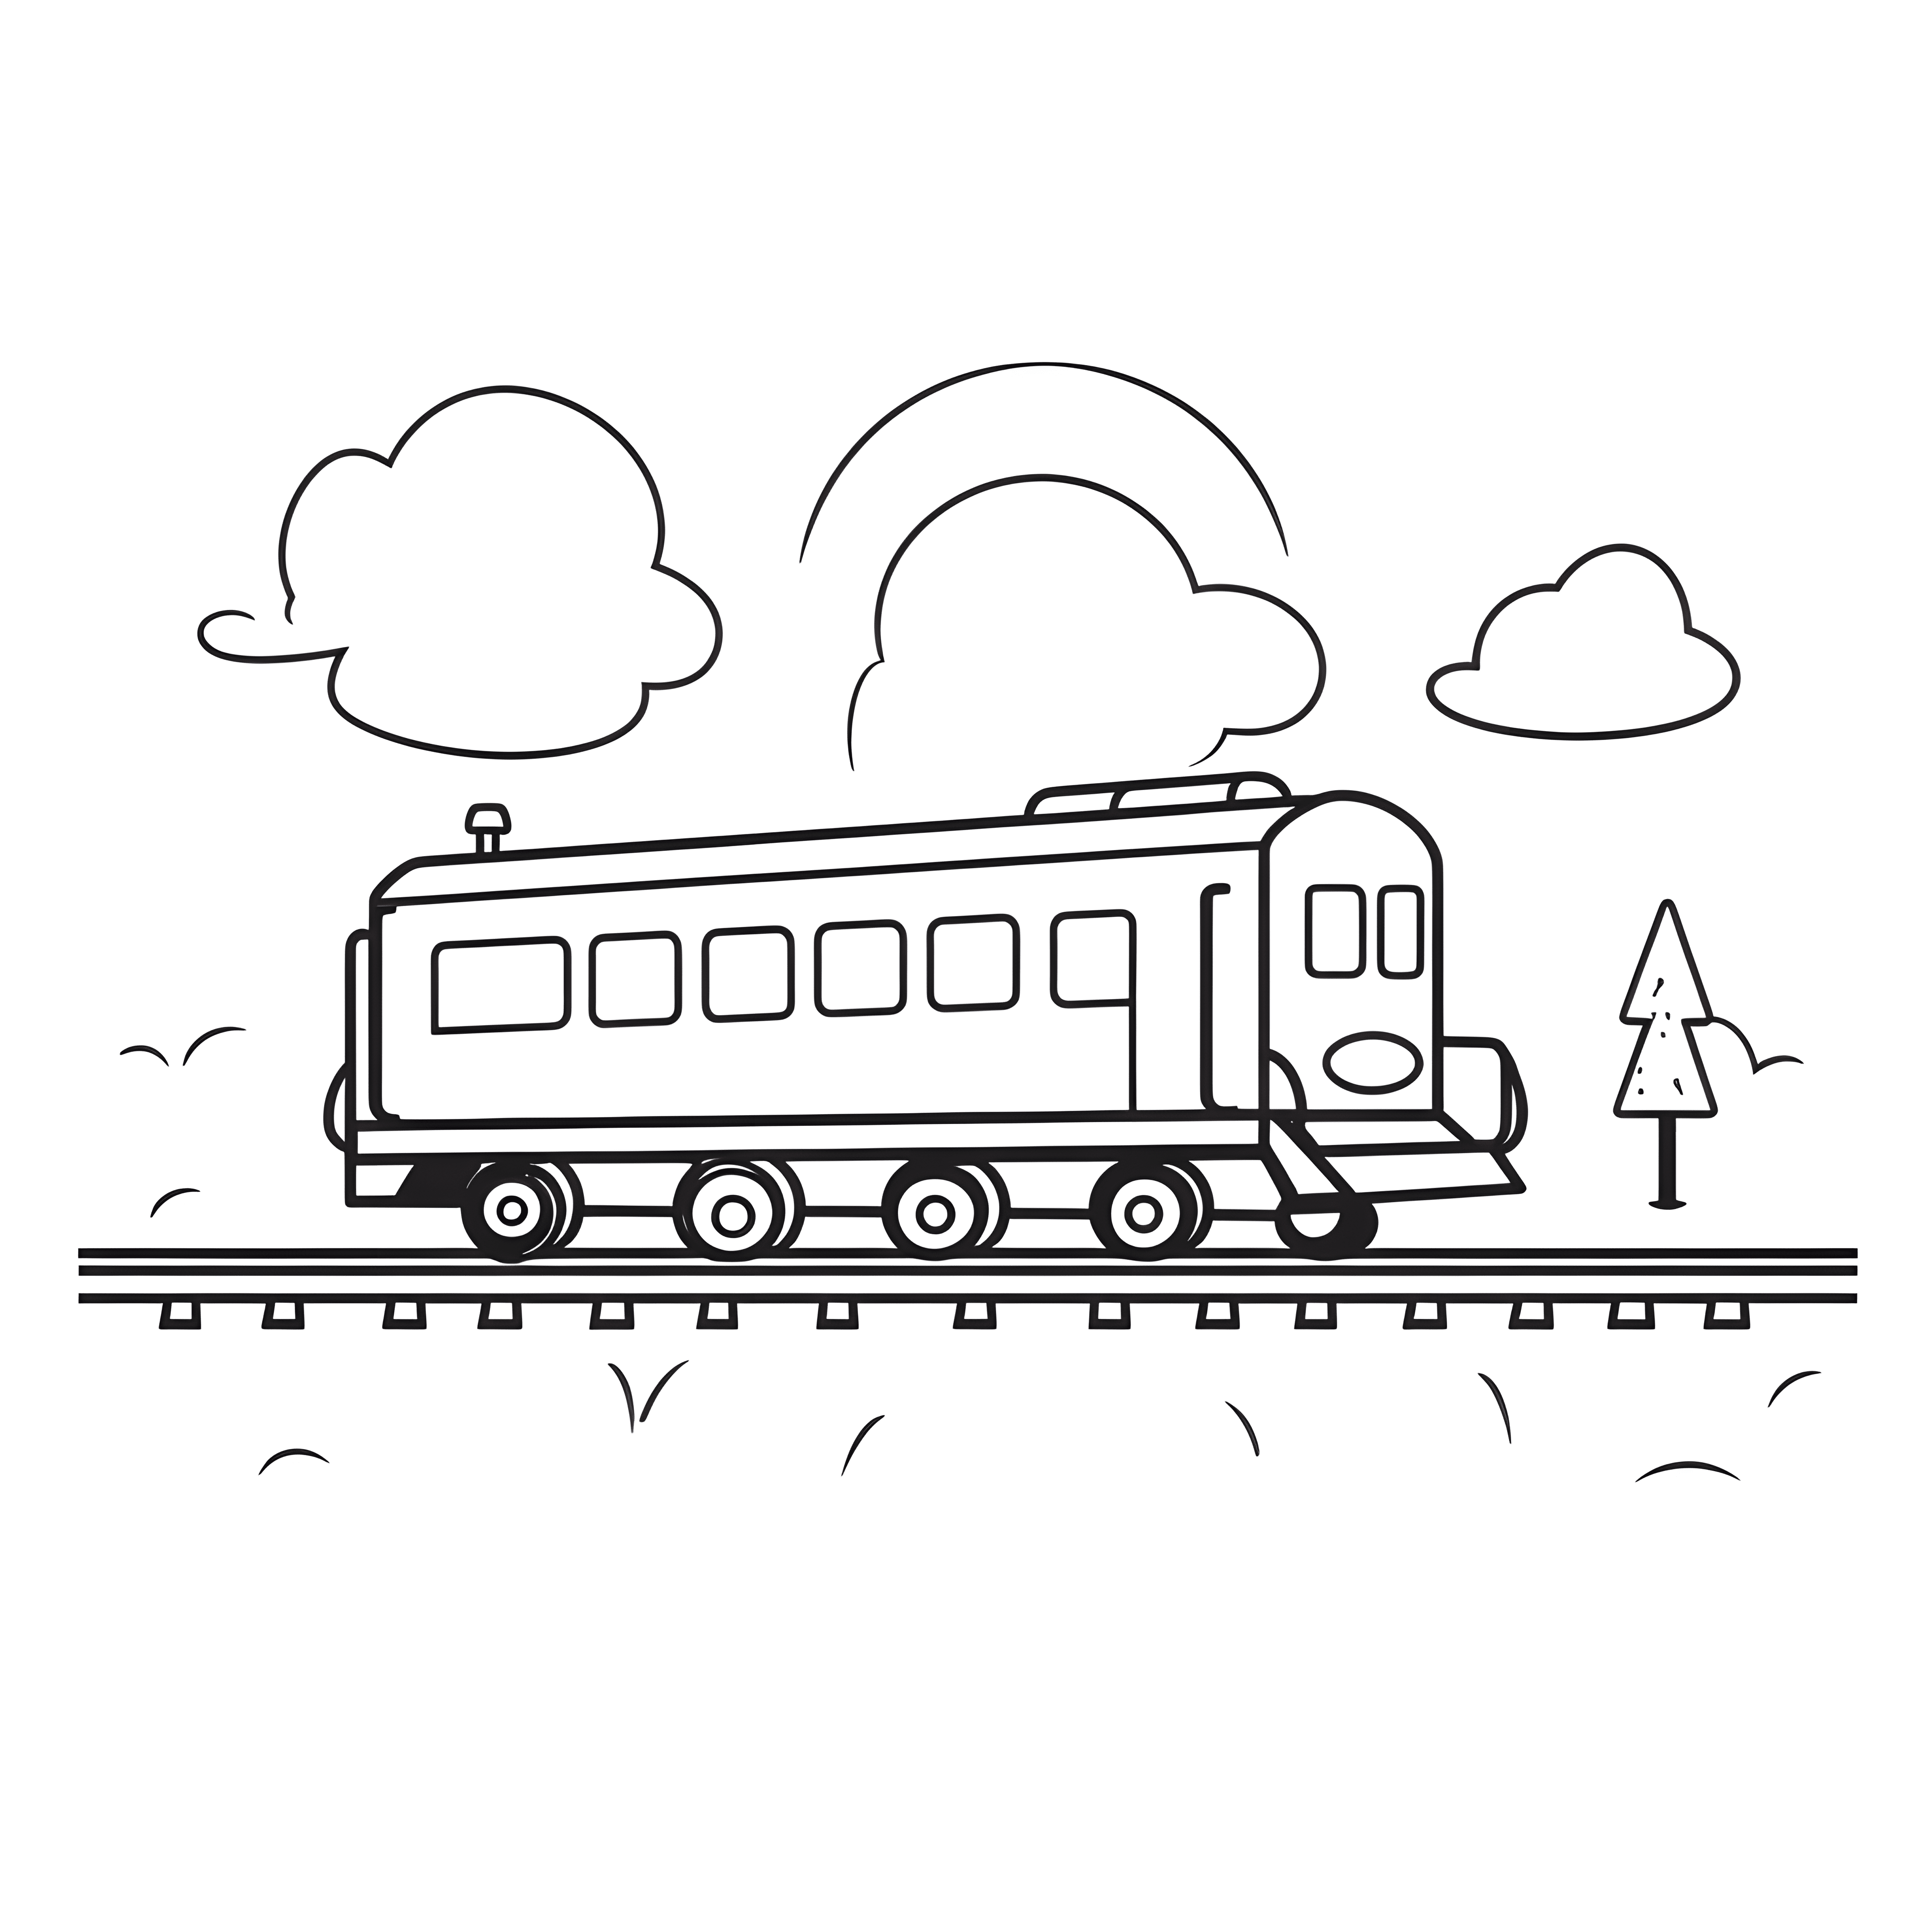 Ein Zug auf einem Gleis